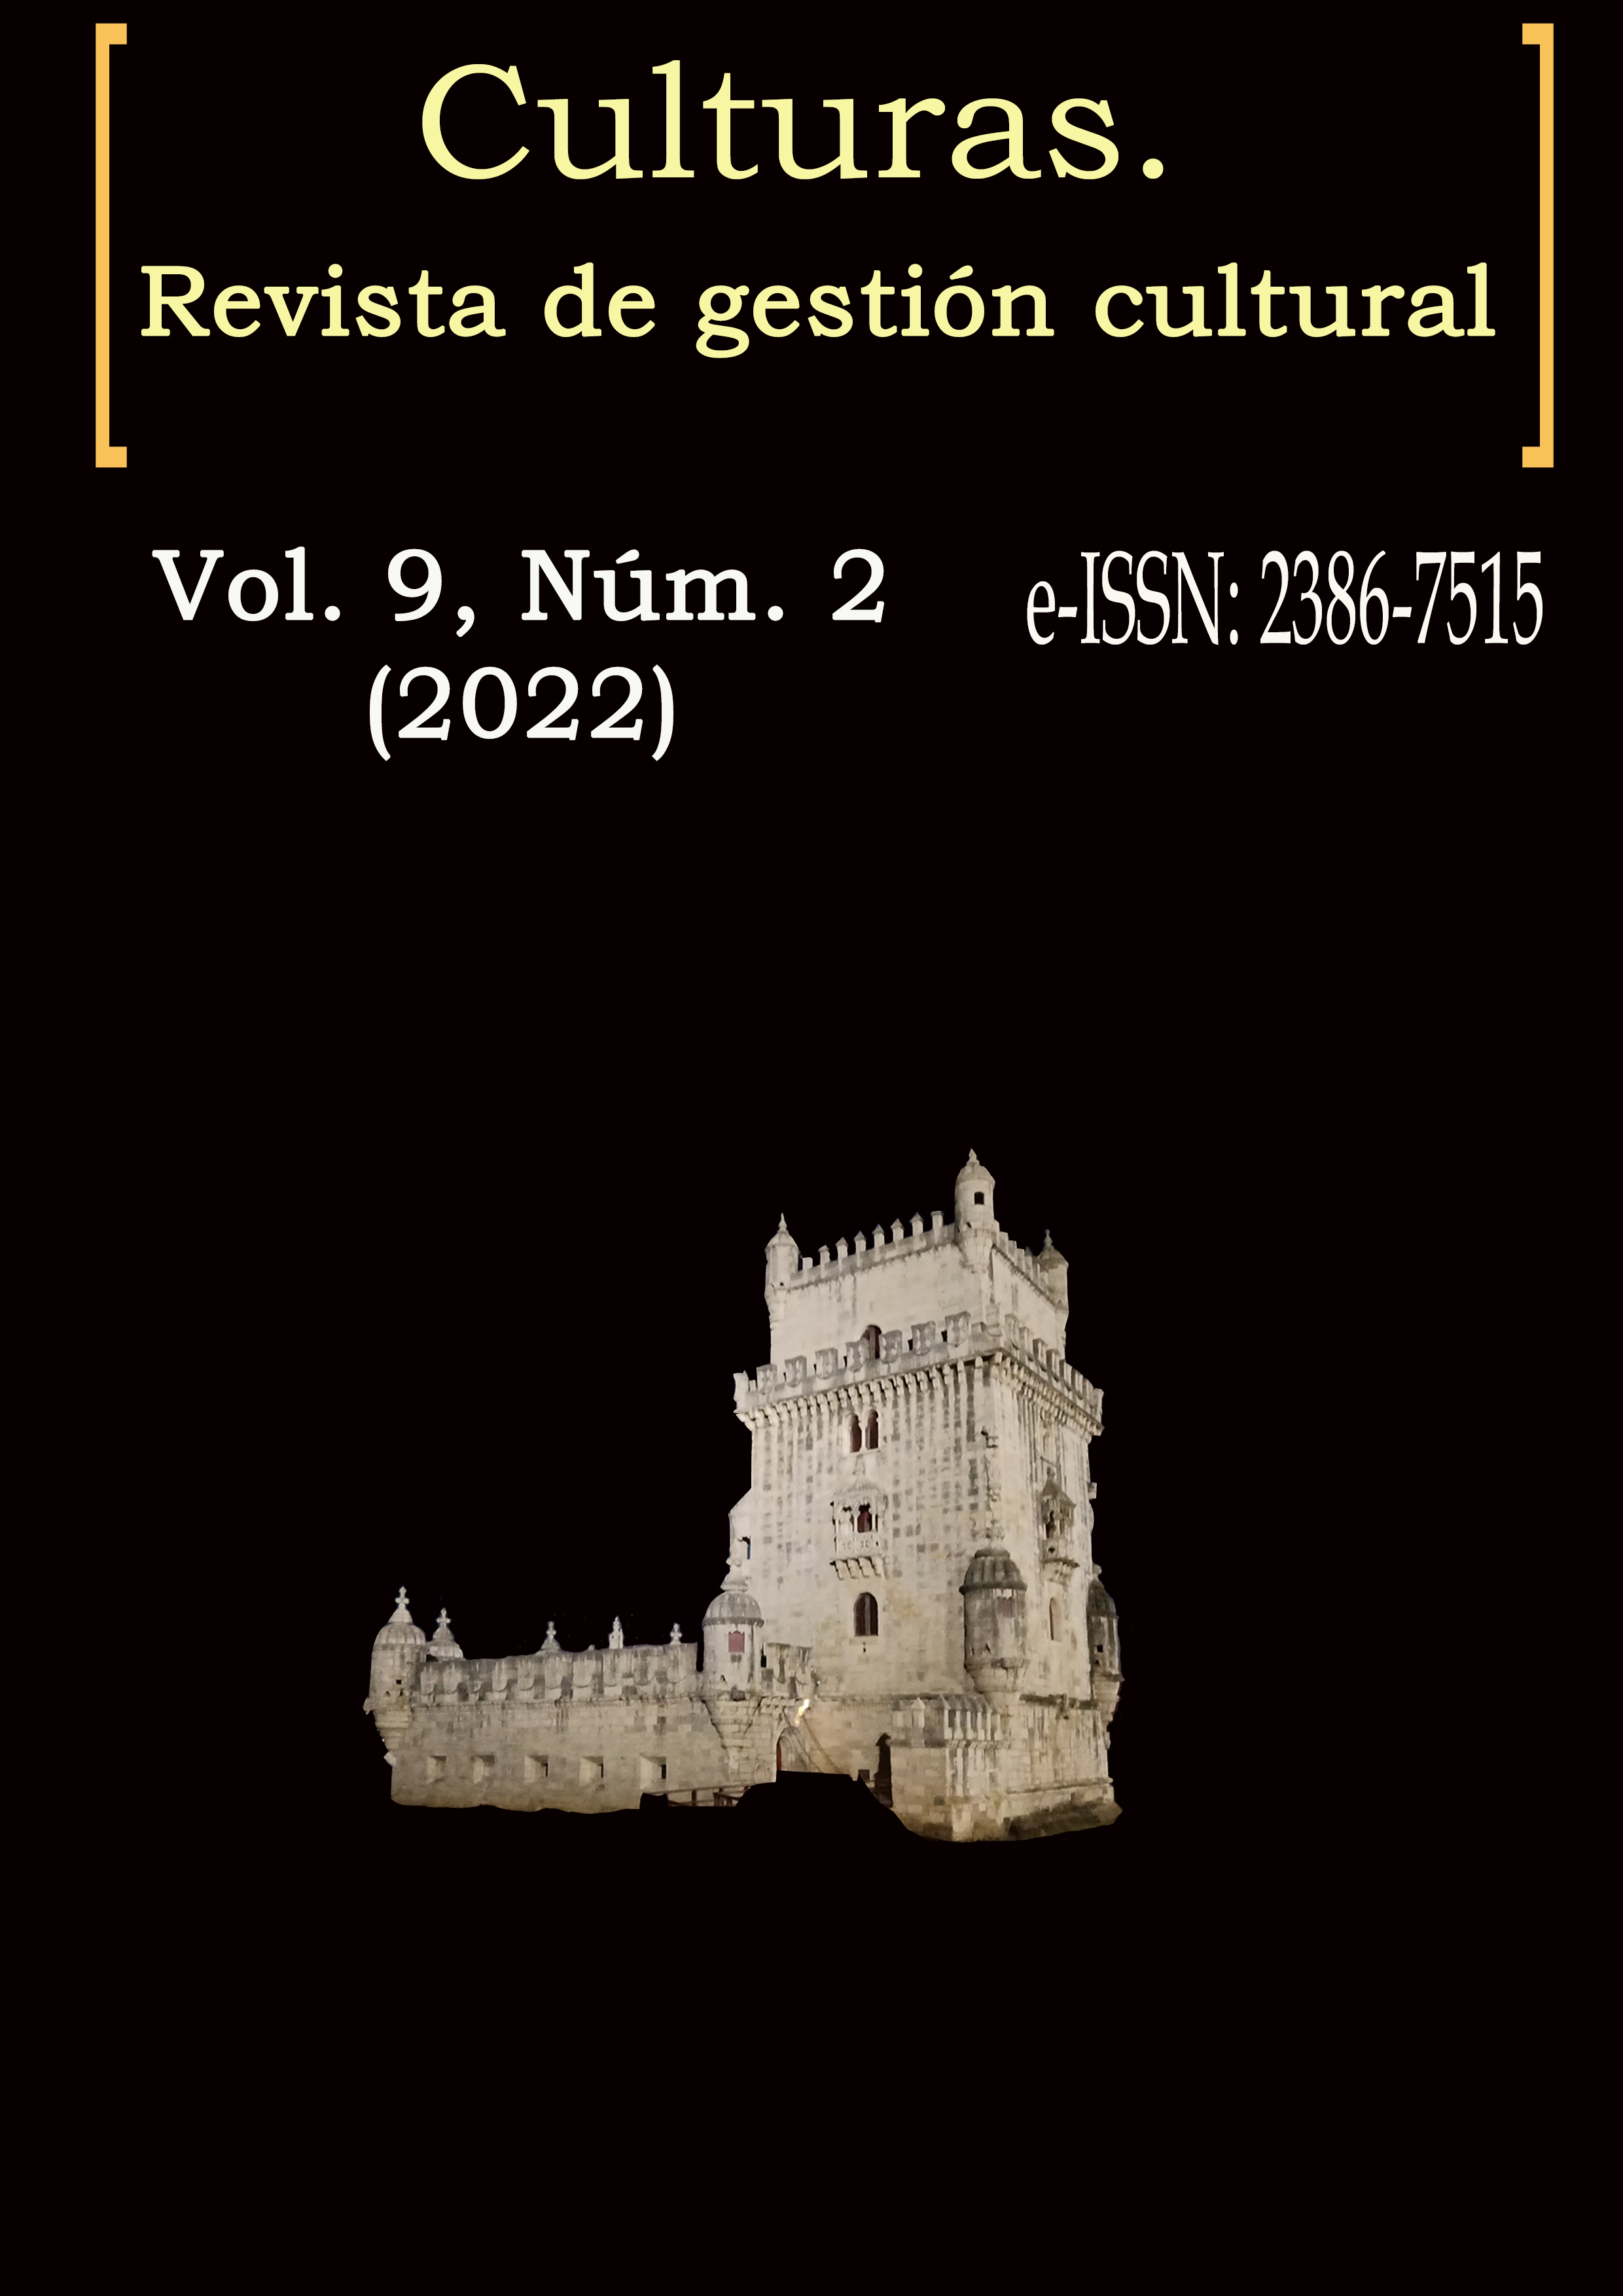 Culturas Vol. 9, Núm. 2 (2022)